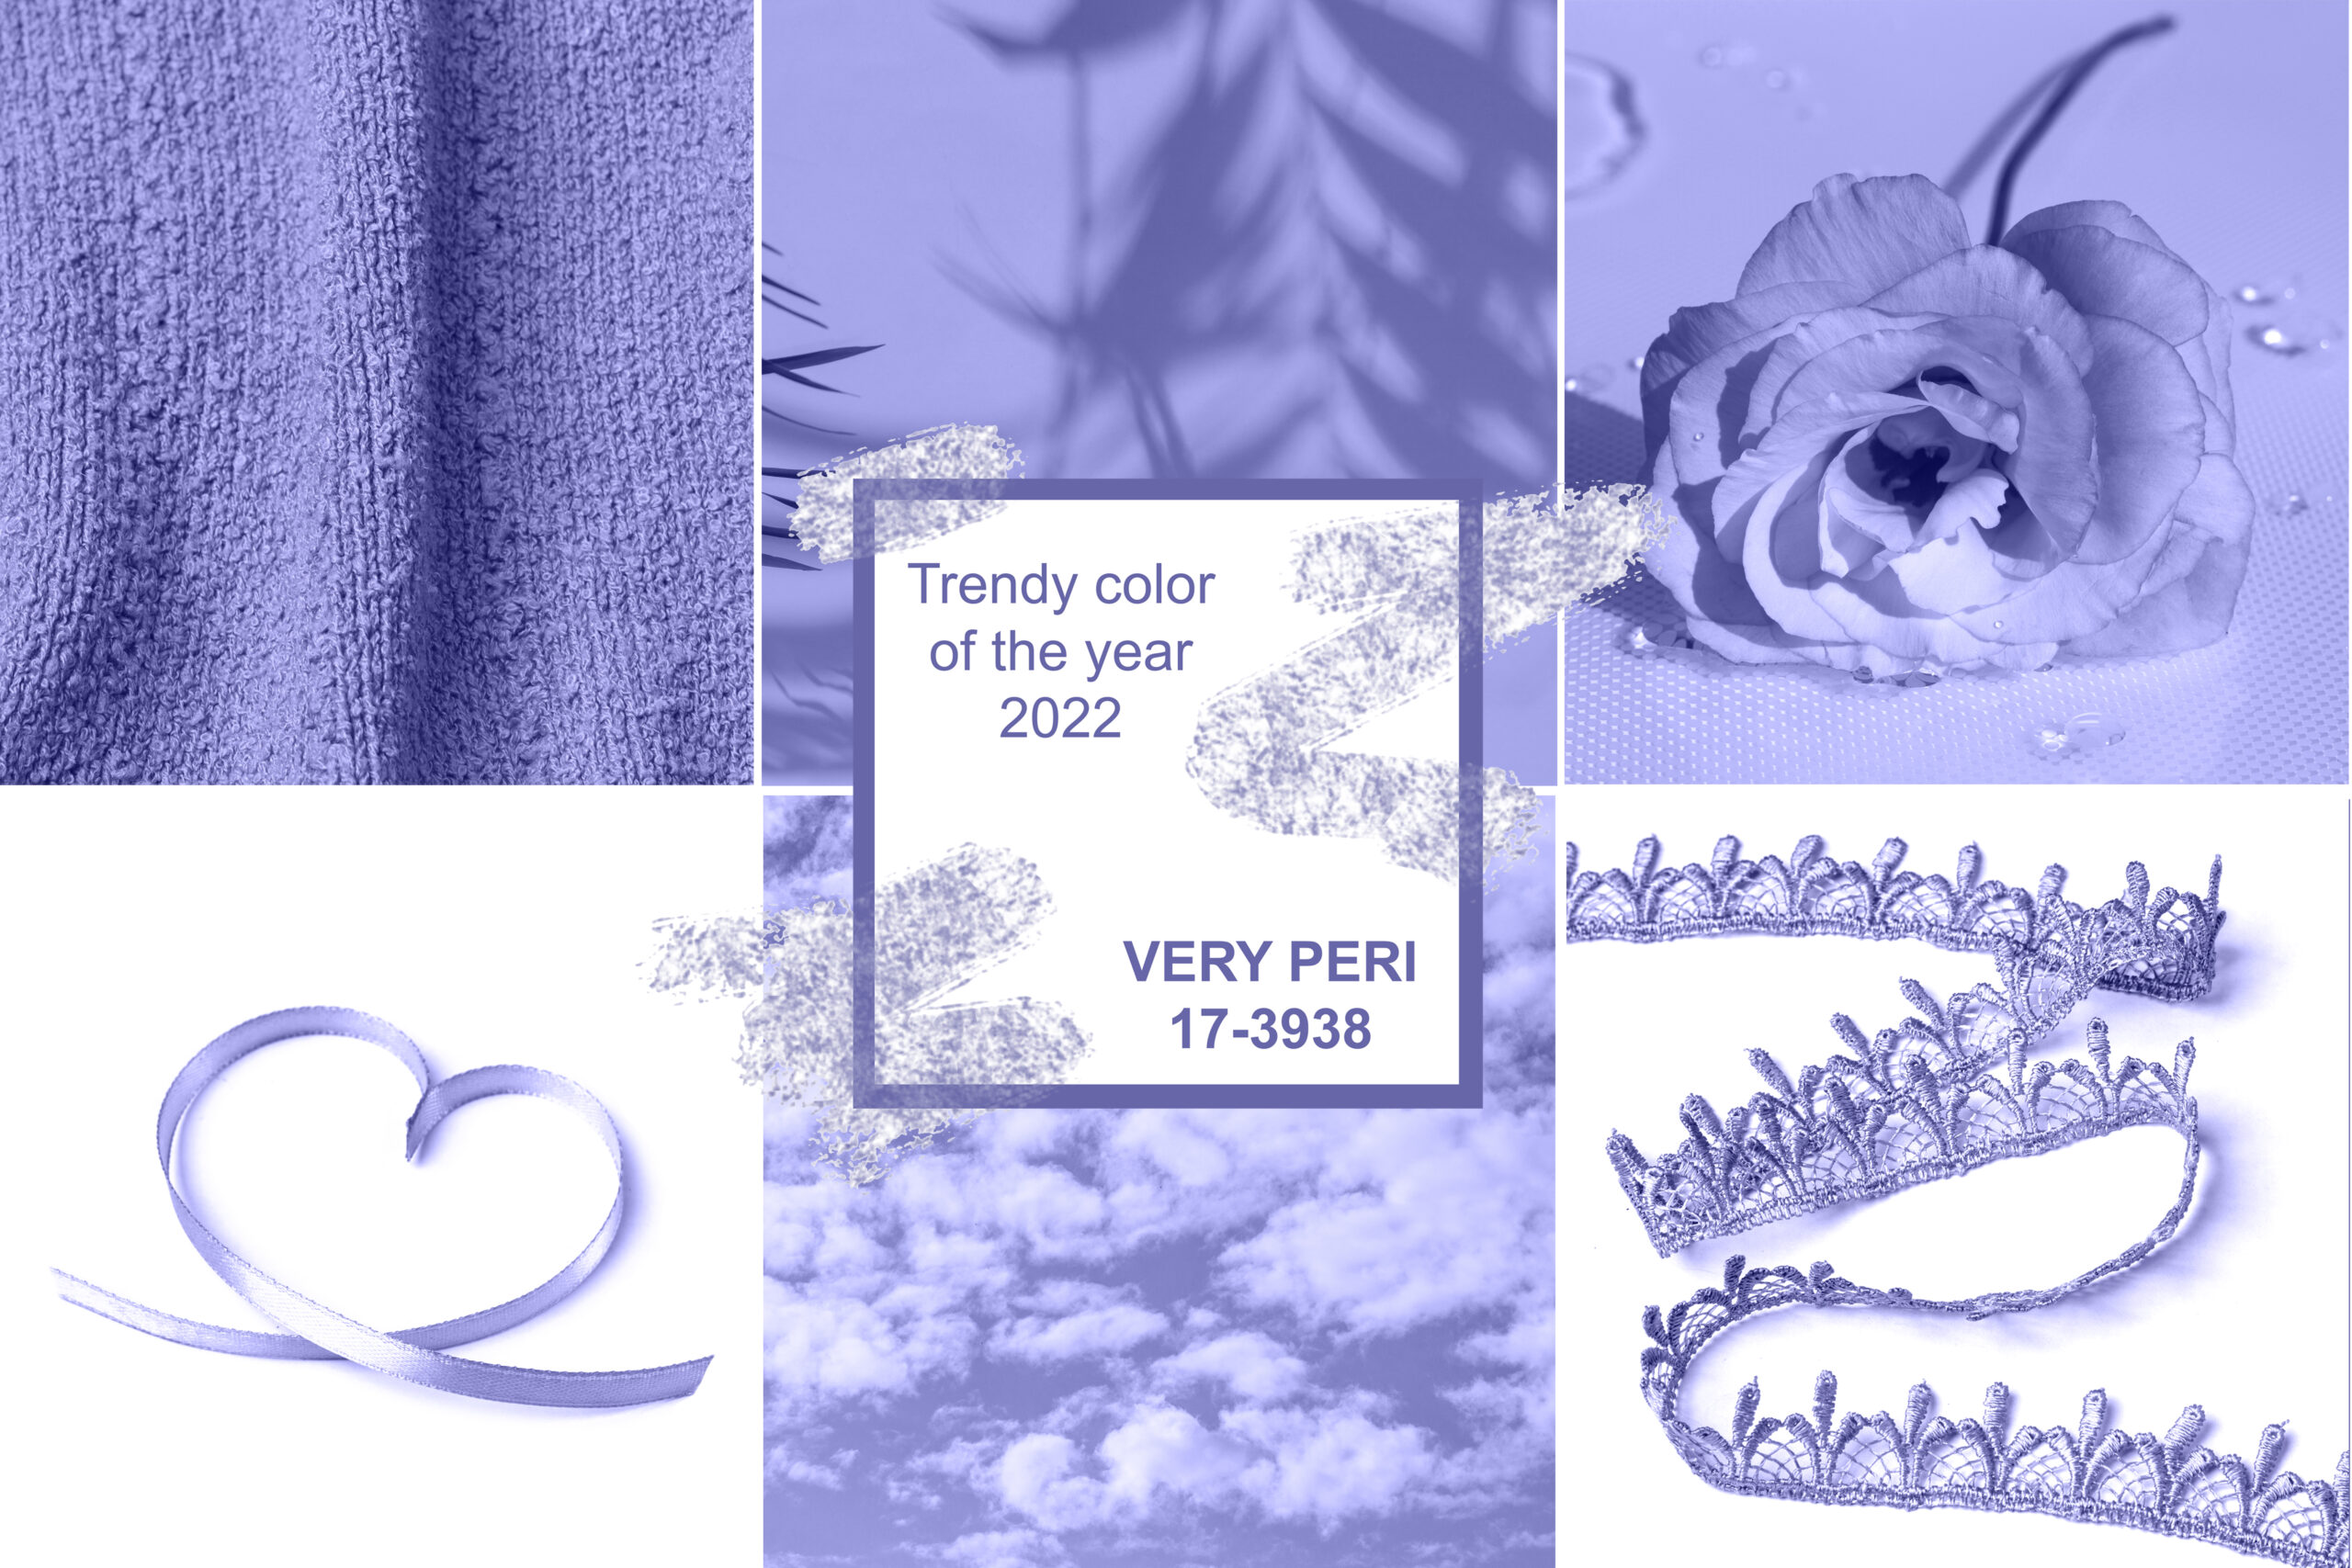 Il colore pantone dell'anno 2022: Very Peri
